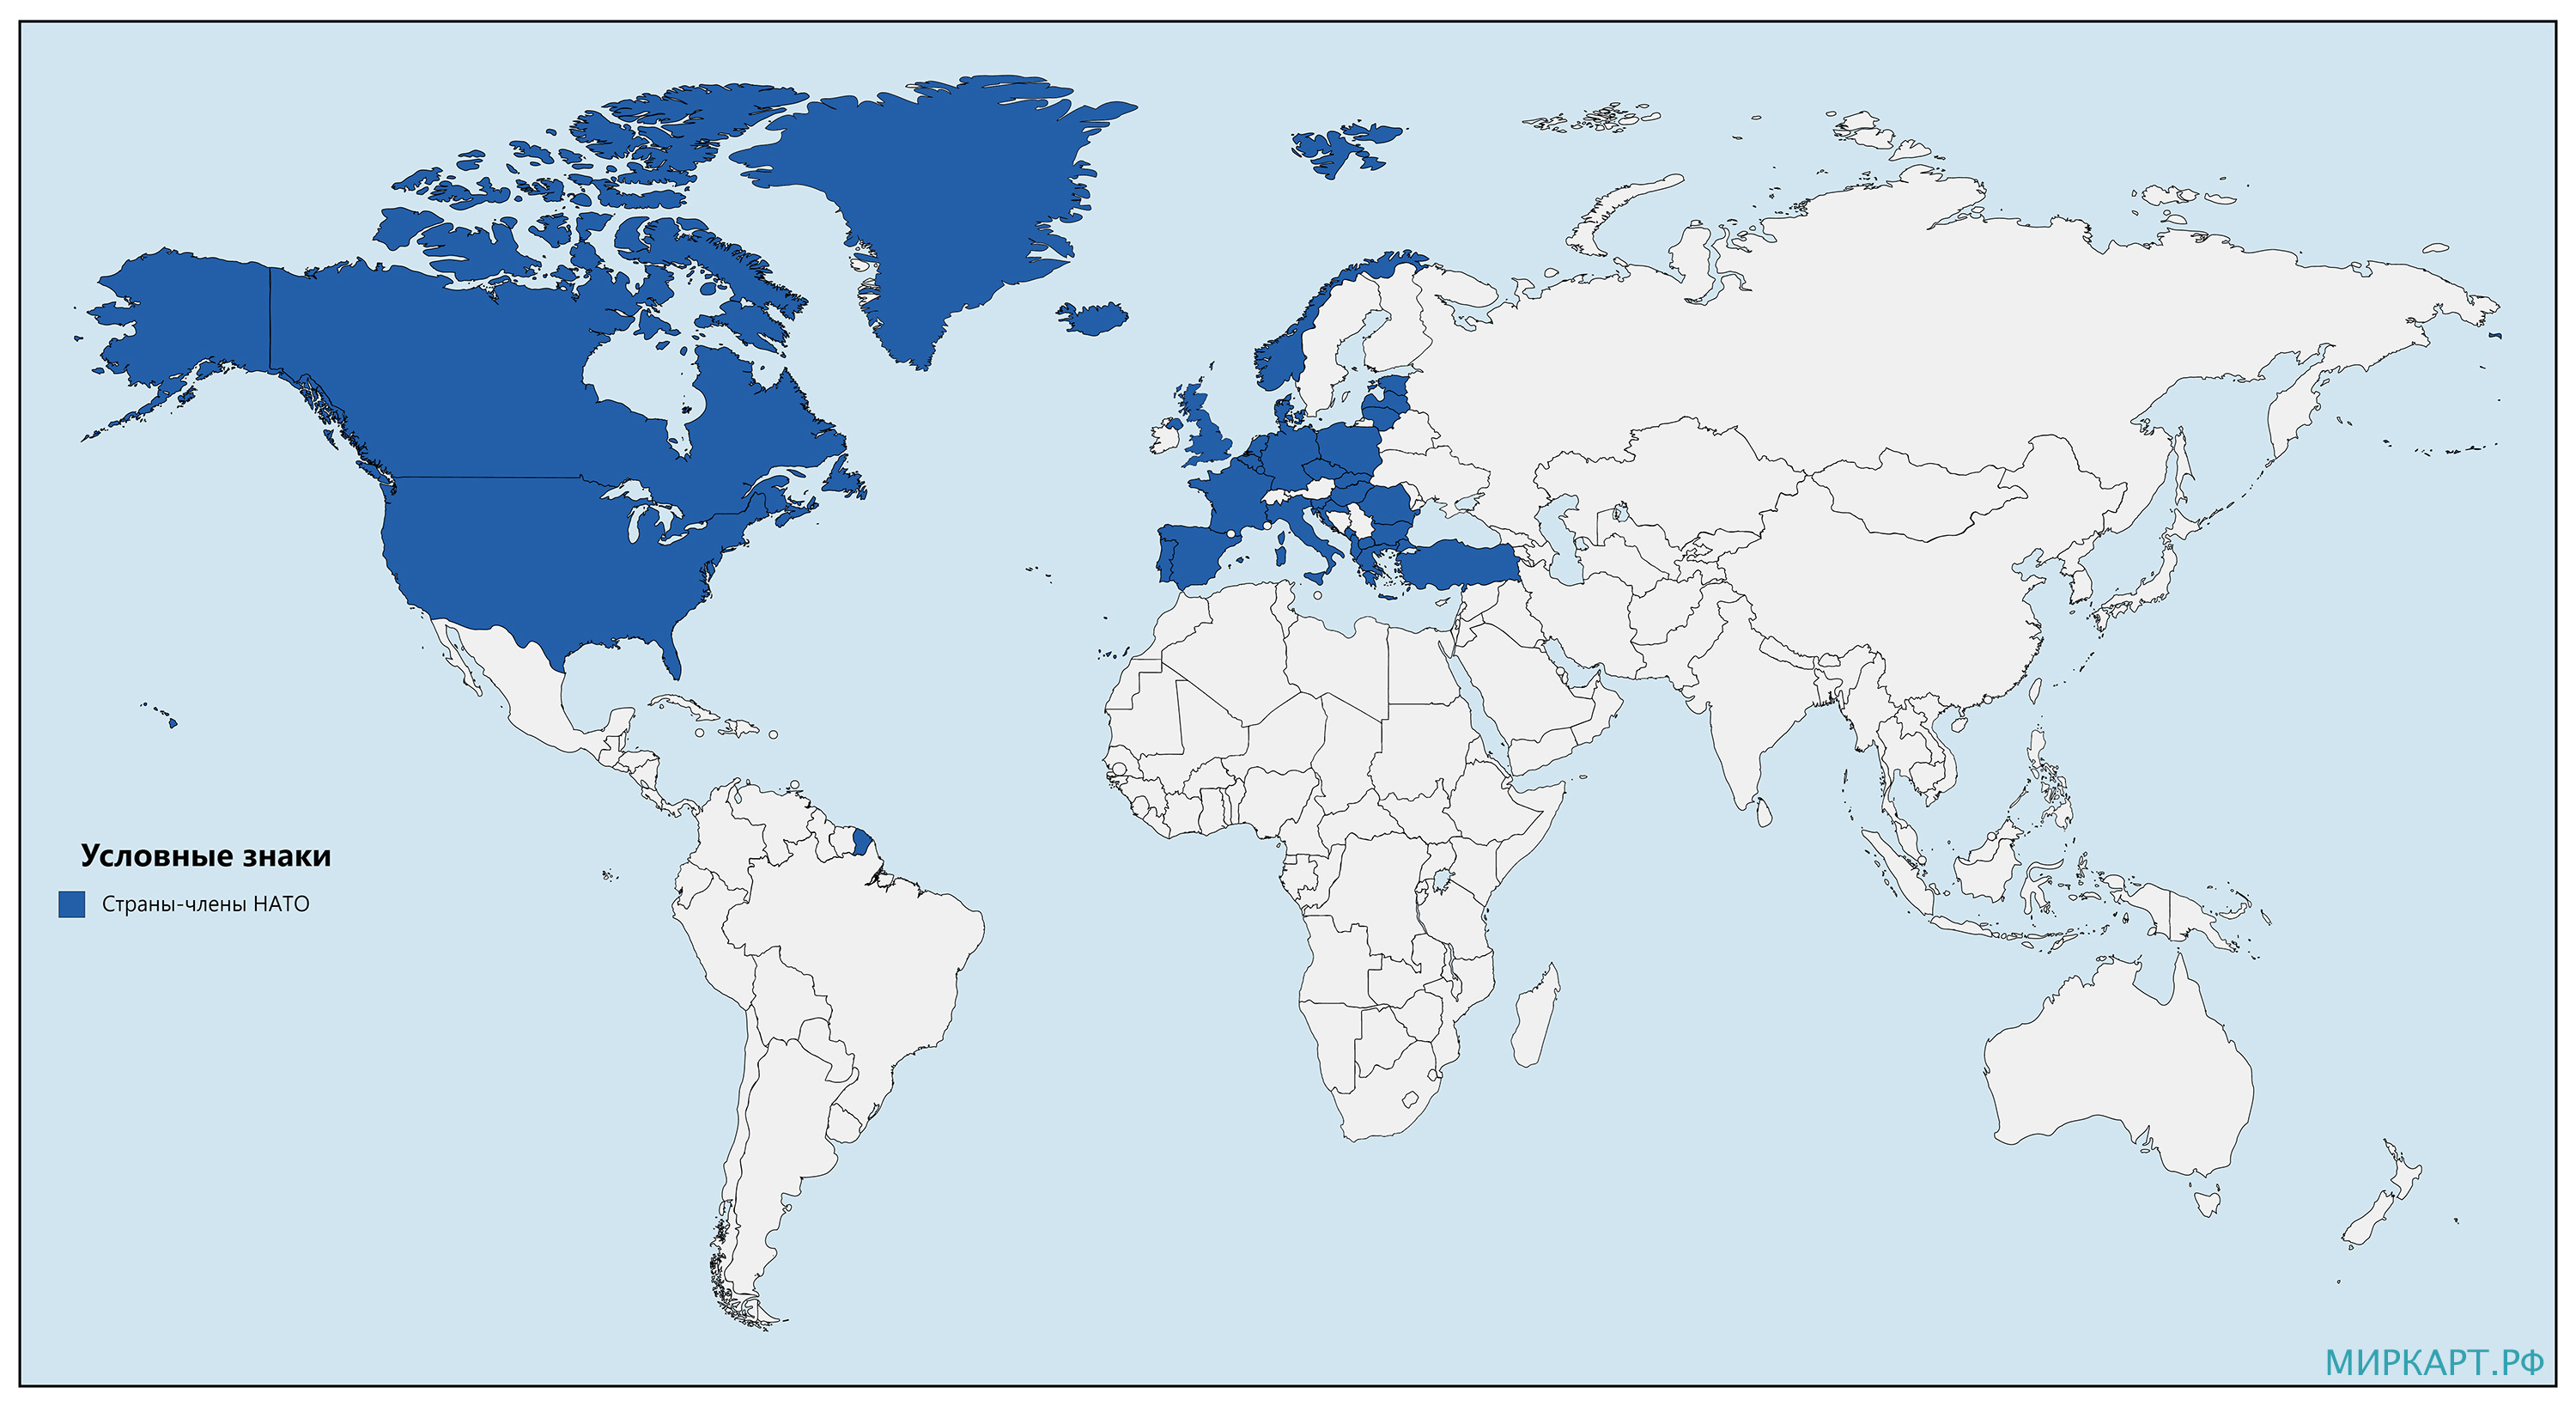 Последняя страна в нато. НАТО страны участники на карте. Страны НАТО на карте 2021. Страны НАТО на карте 2020.